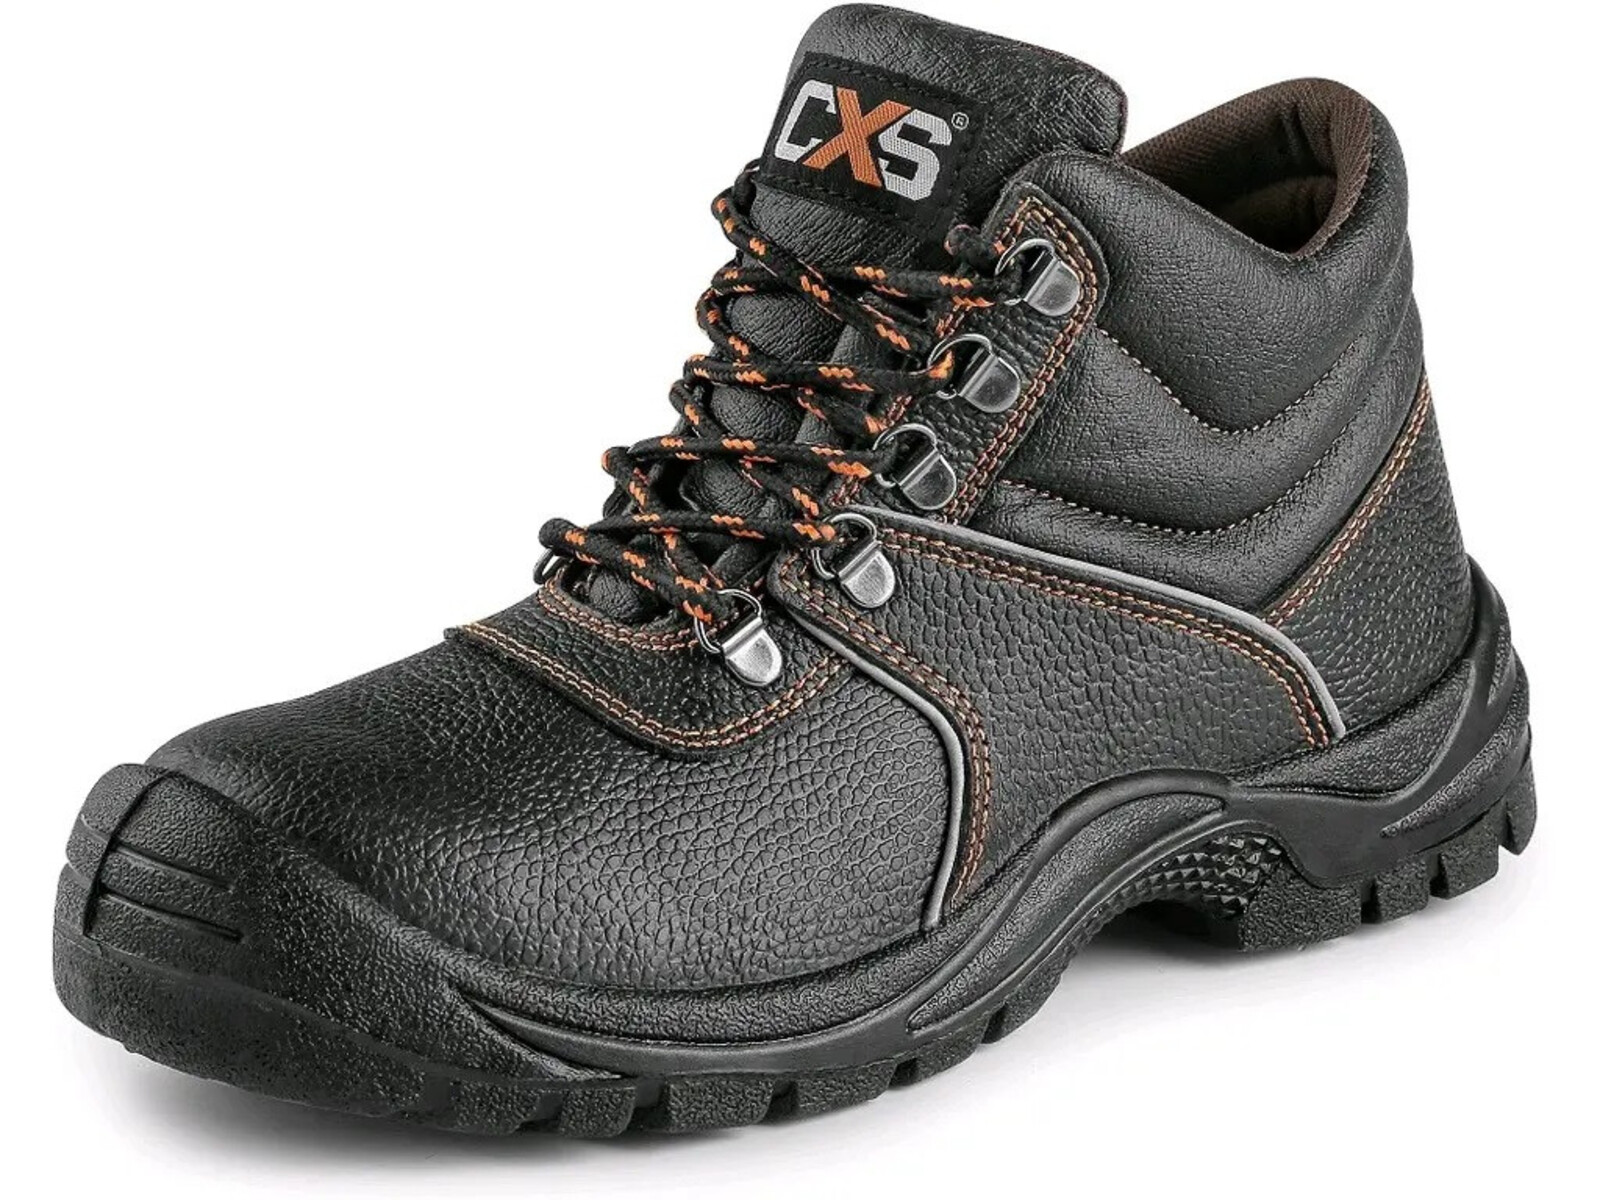 Bezpečnostná členková obuv CXS Stone Marble S3 SRC - veľkosť: 44, farba: čierna/oranžová